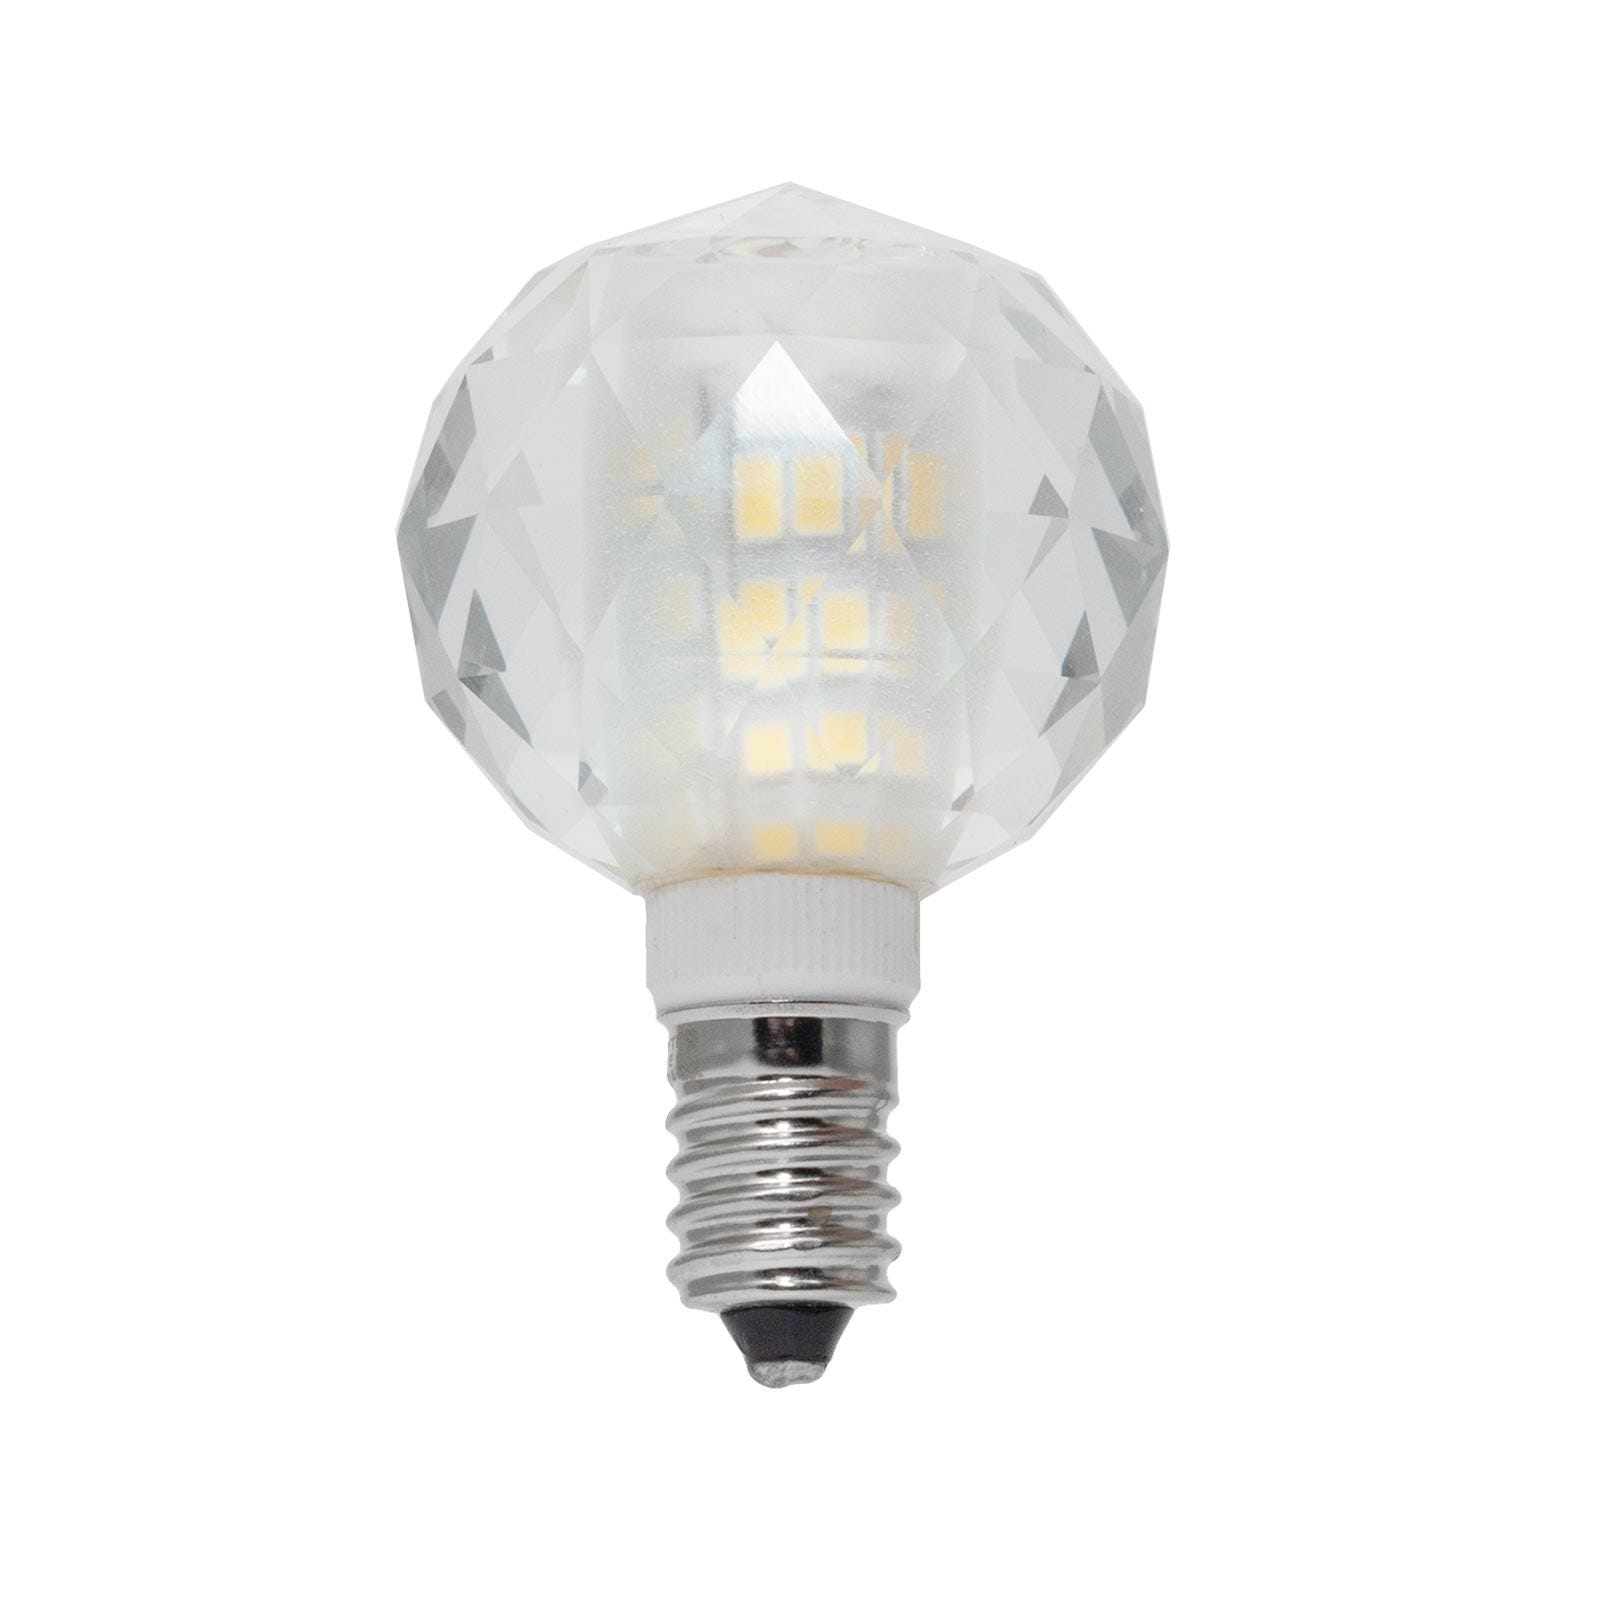 Lampadina LED 1W basso consumo lampada luce votiva attacco E12